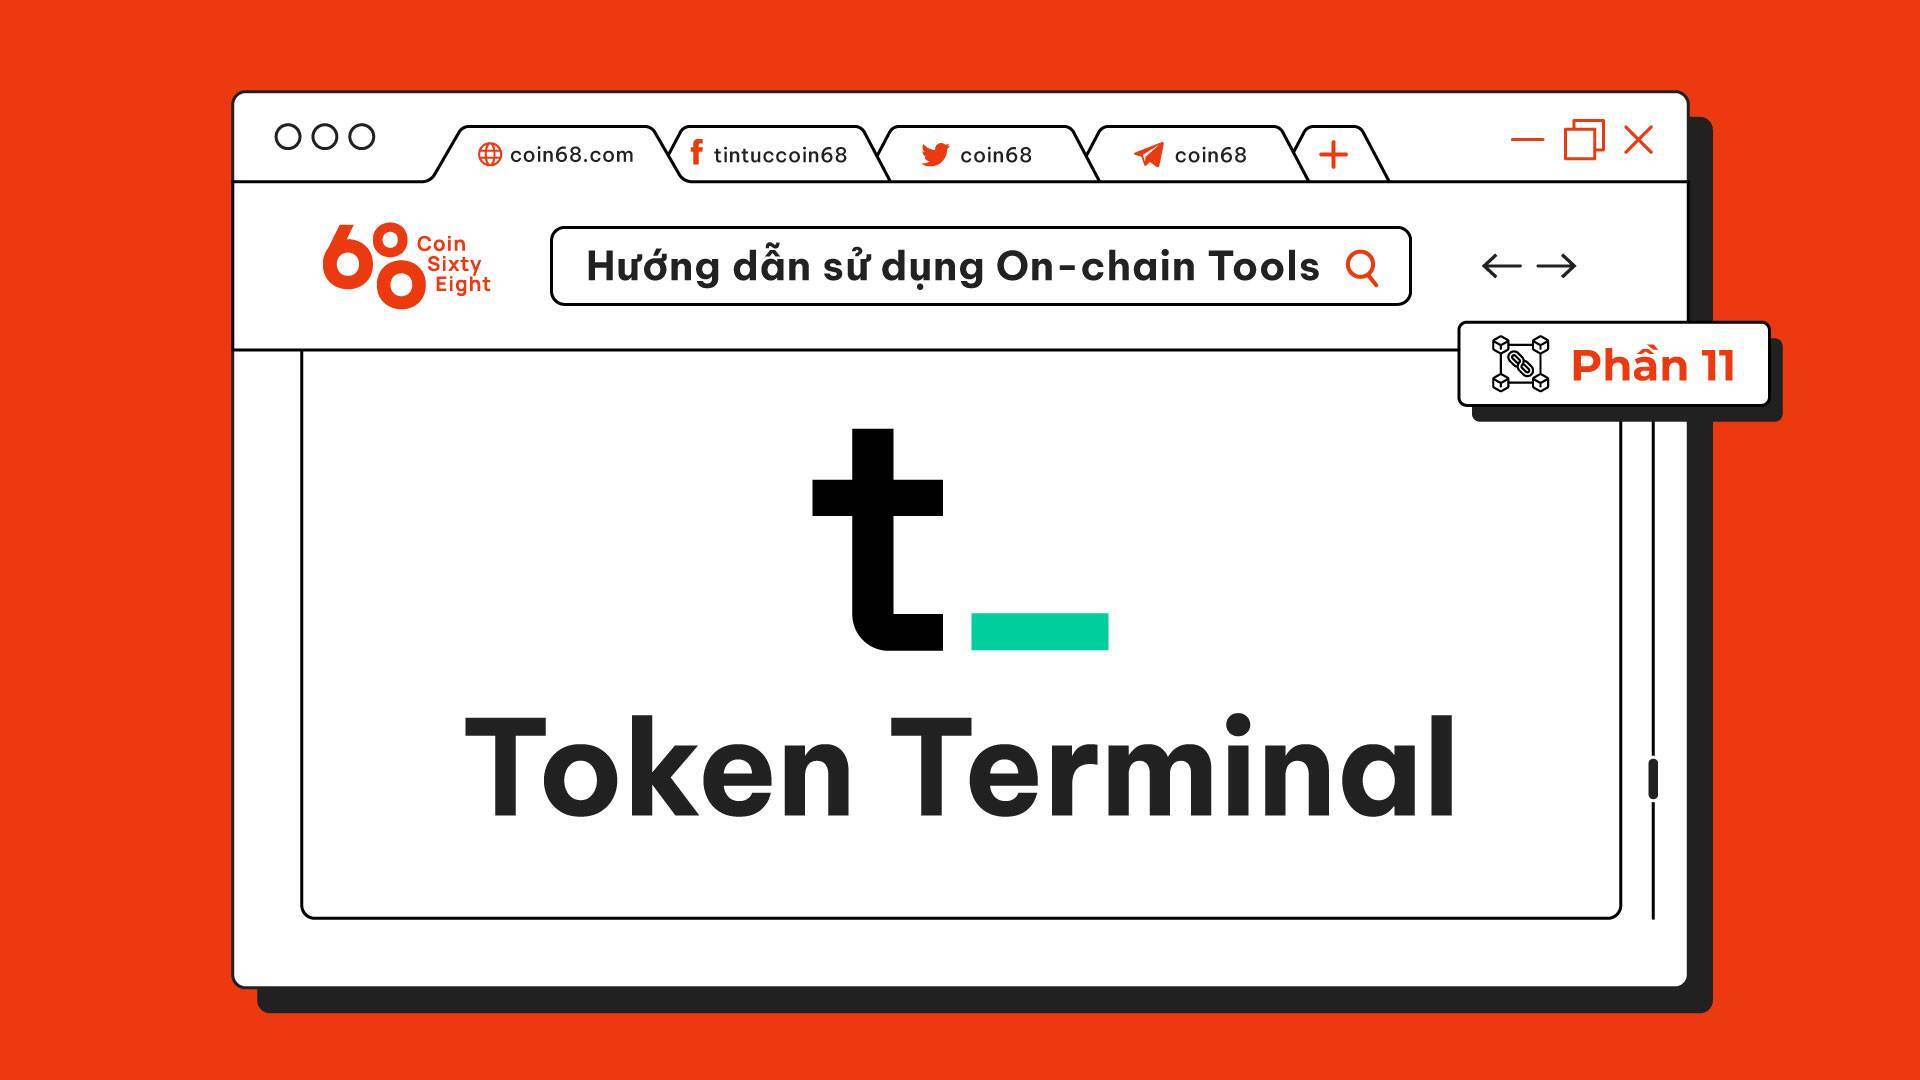 Hướng Dẫn Sử Dụng On-chain Tools phần 11 Token Terminal